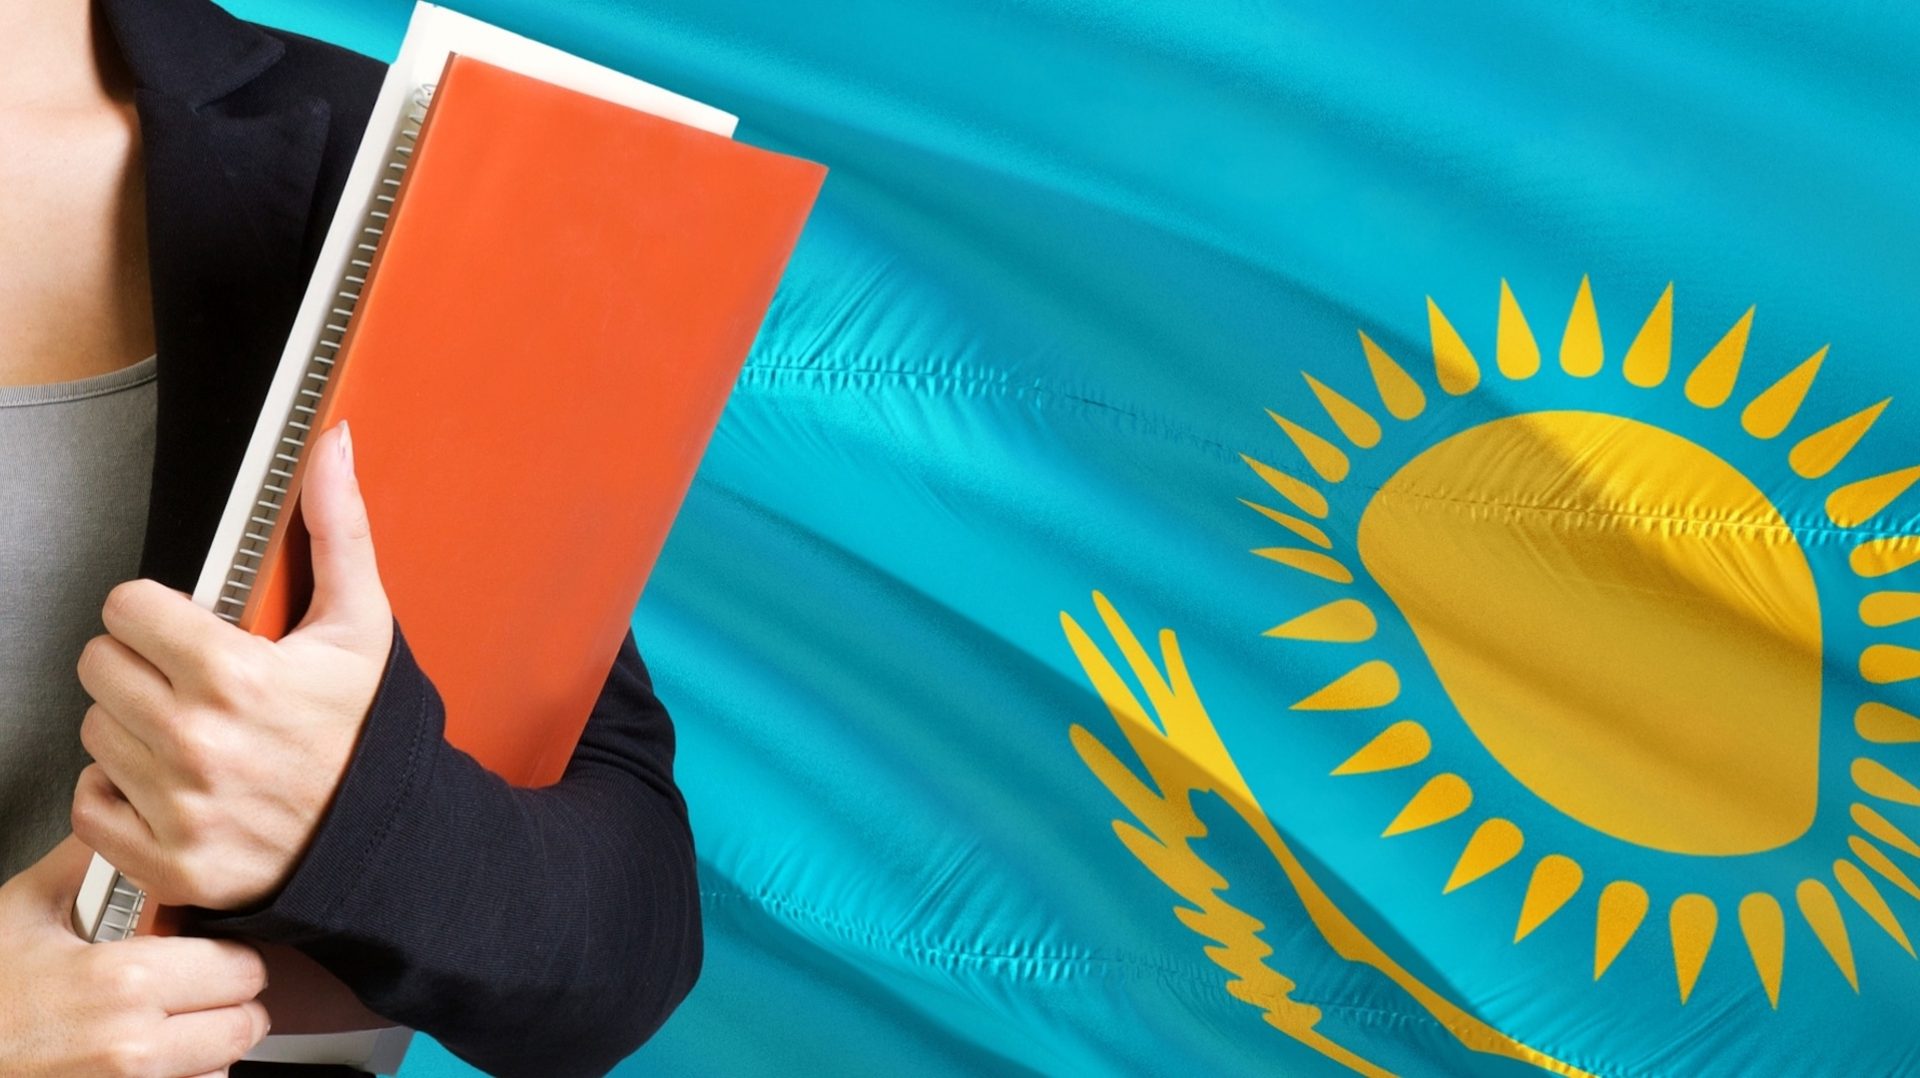 Язык казахстана